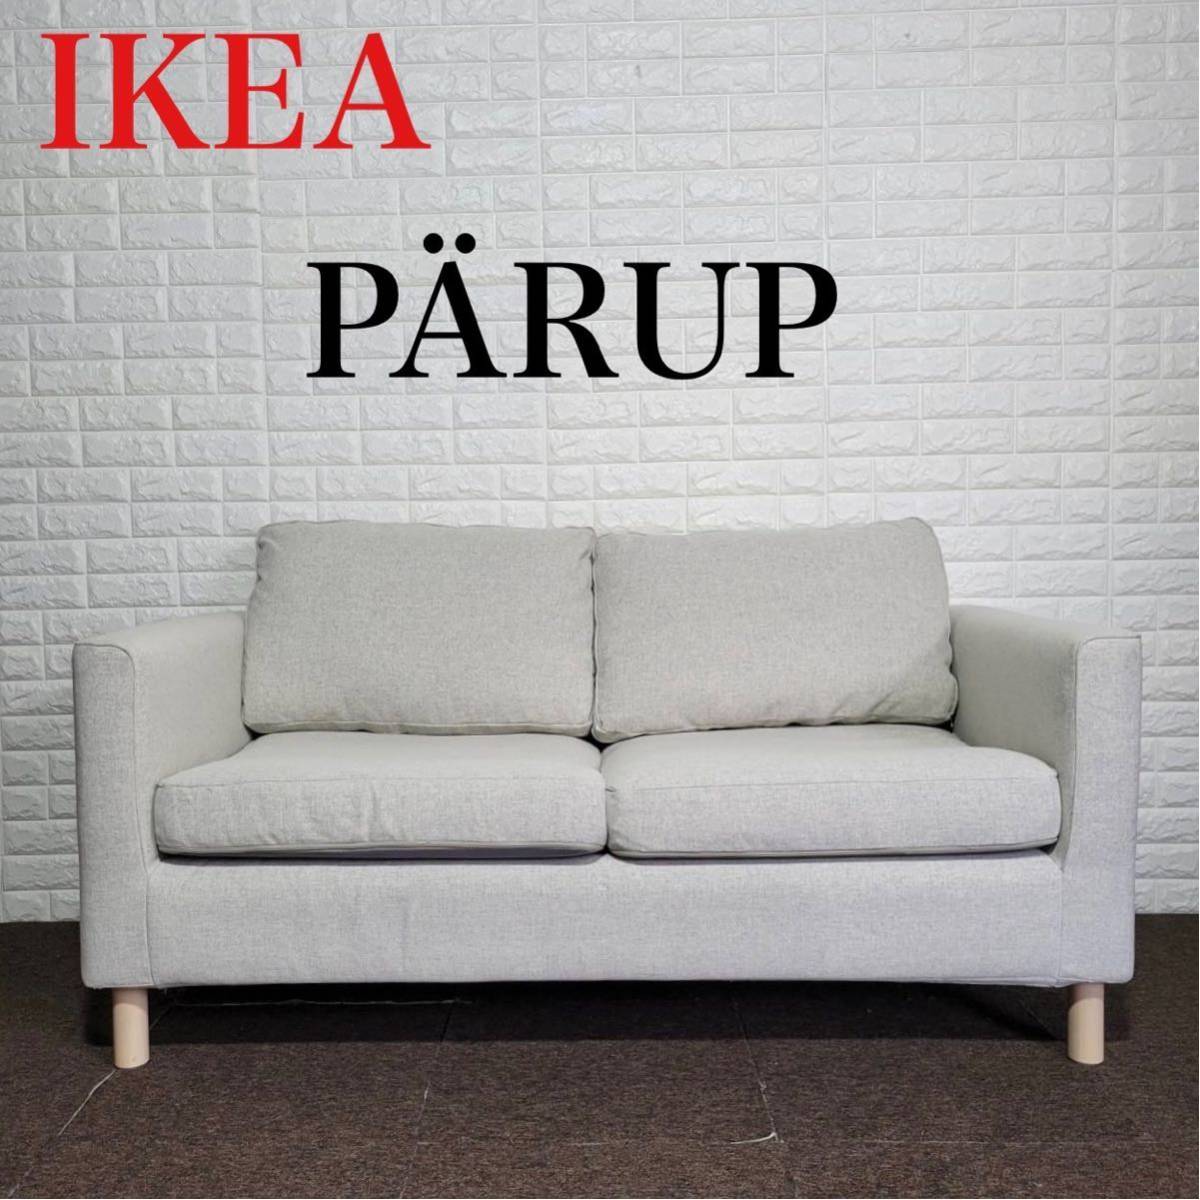 2022激安通販 ソファ IKEA ペルプ M0450 北欧 おしゃれ ラブソファ 2人掛け 布製